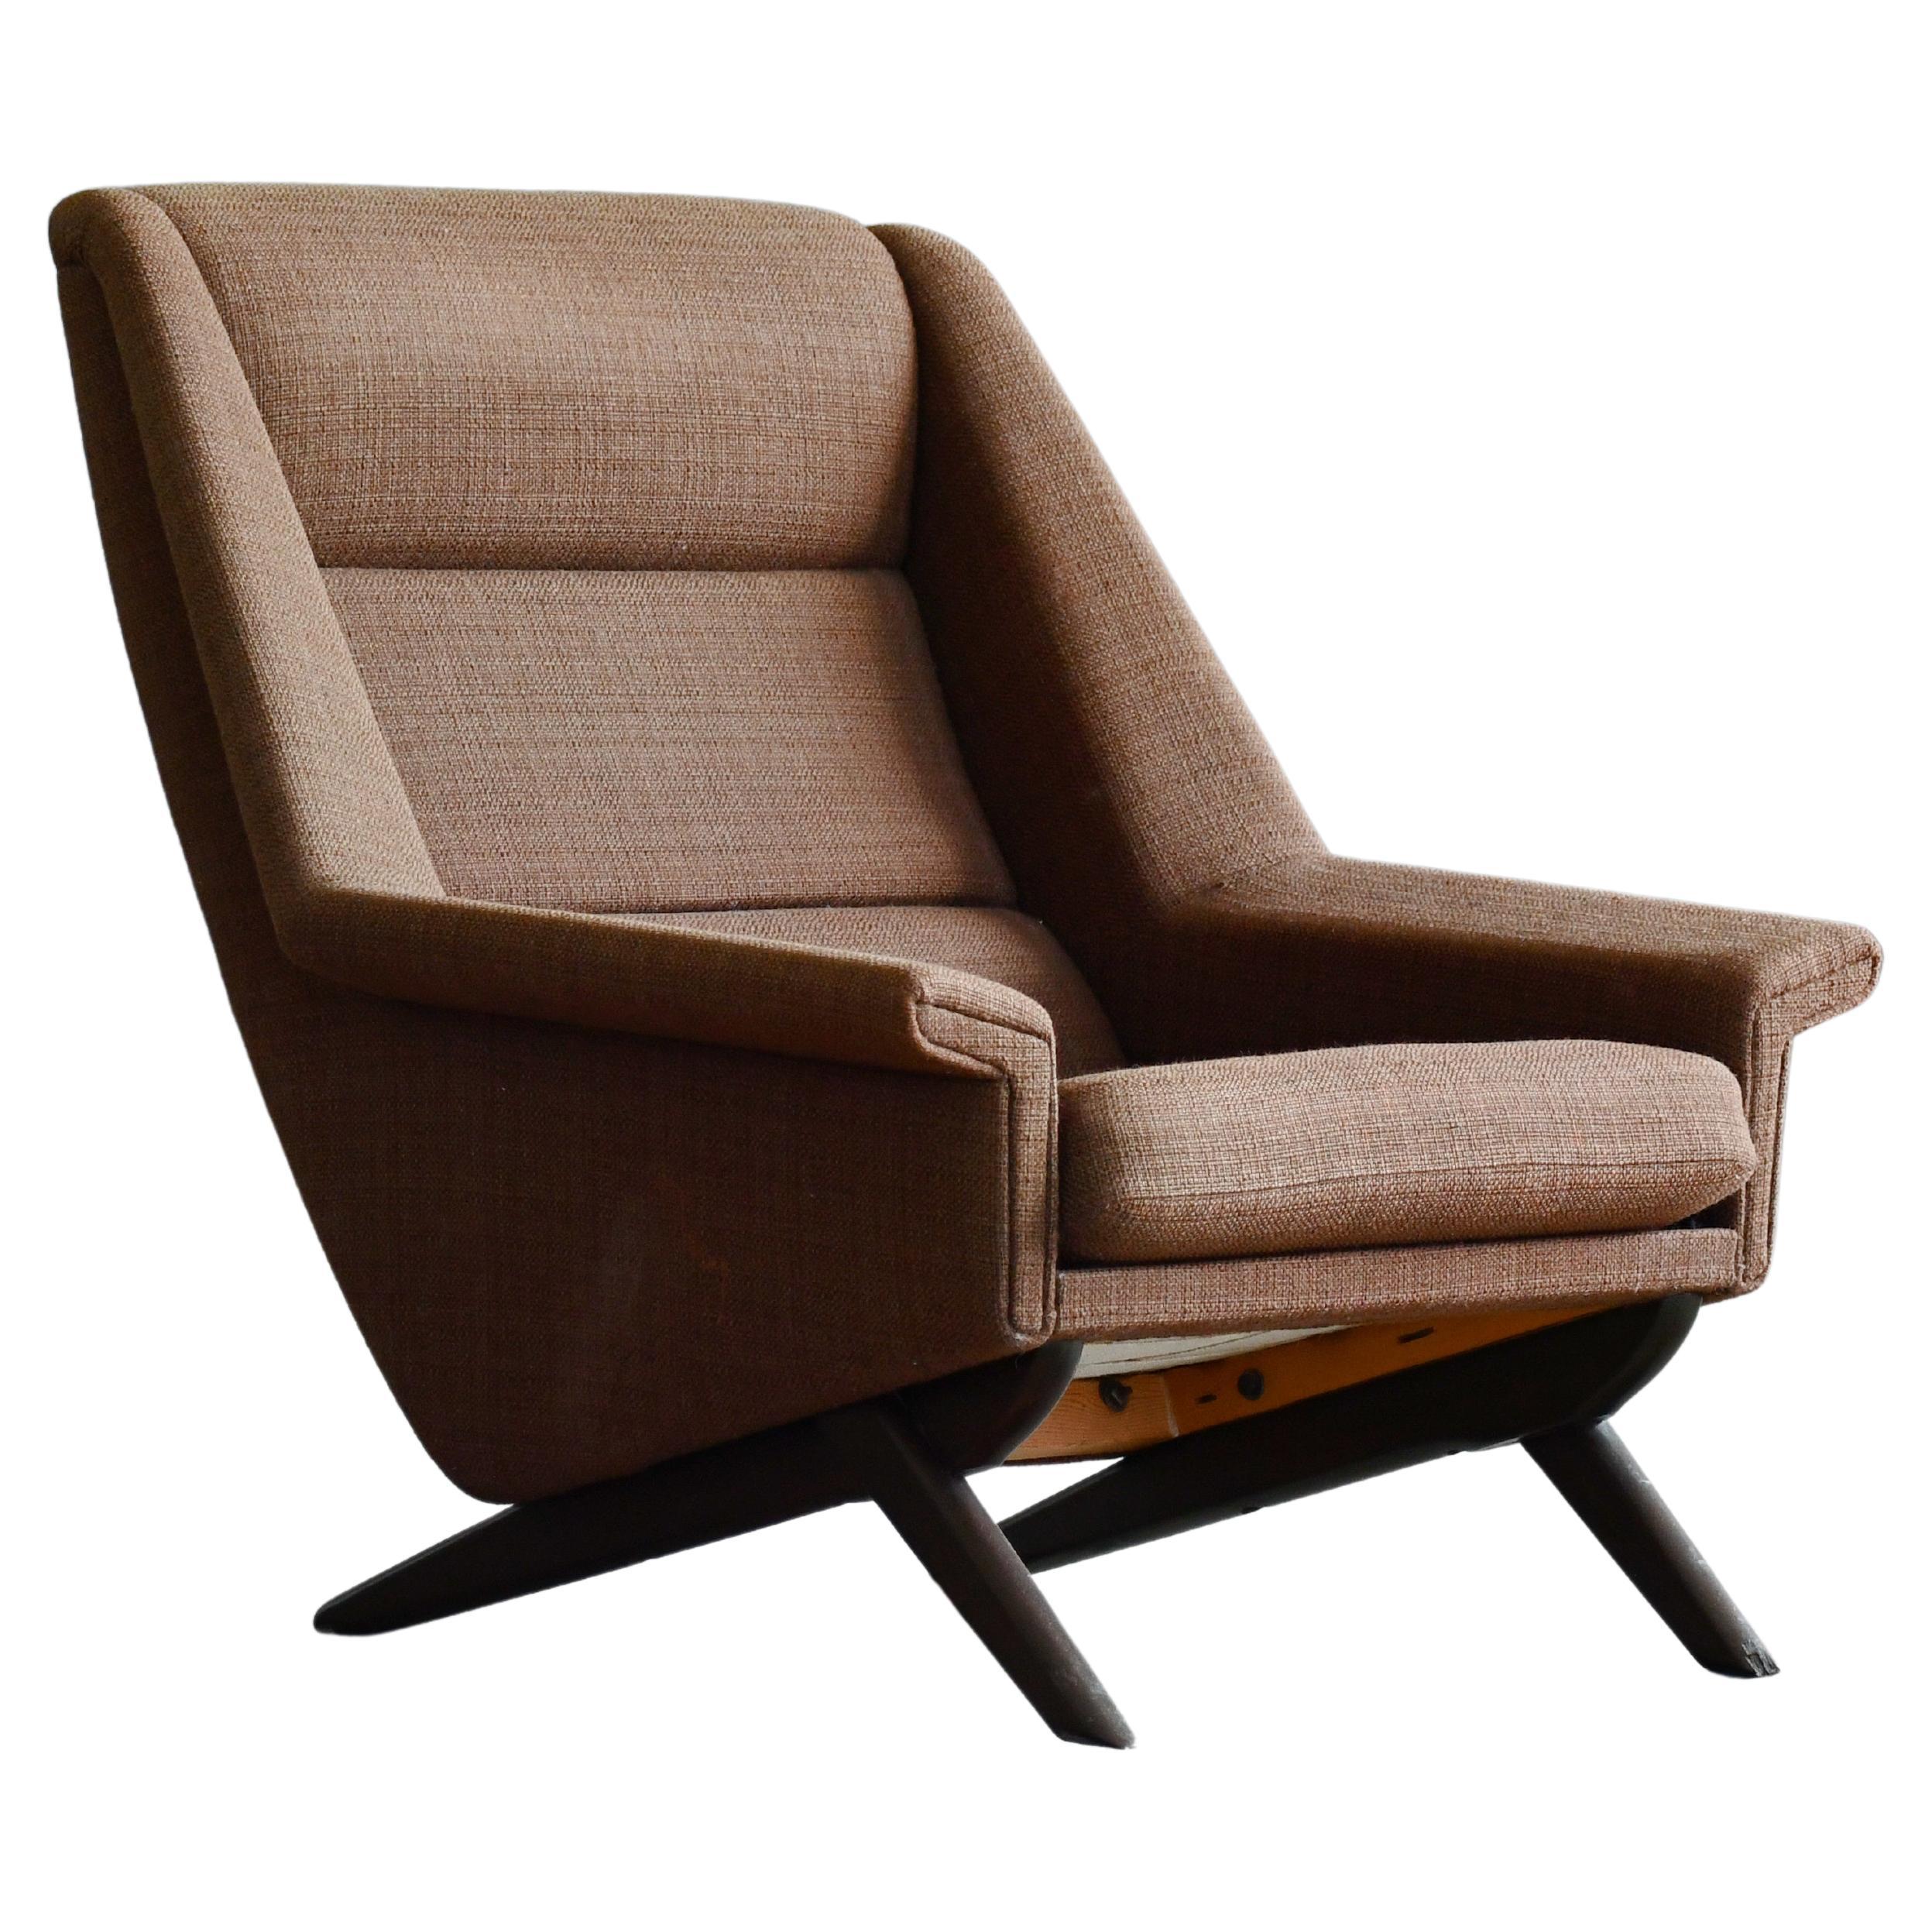 1950's Lounge Chair Model 4410 Folke Ohlsson for Fritz Hansen